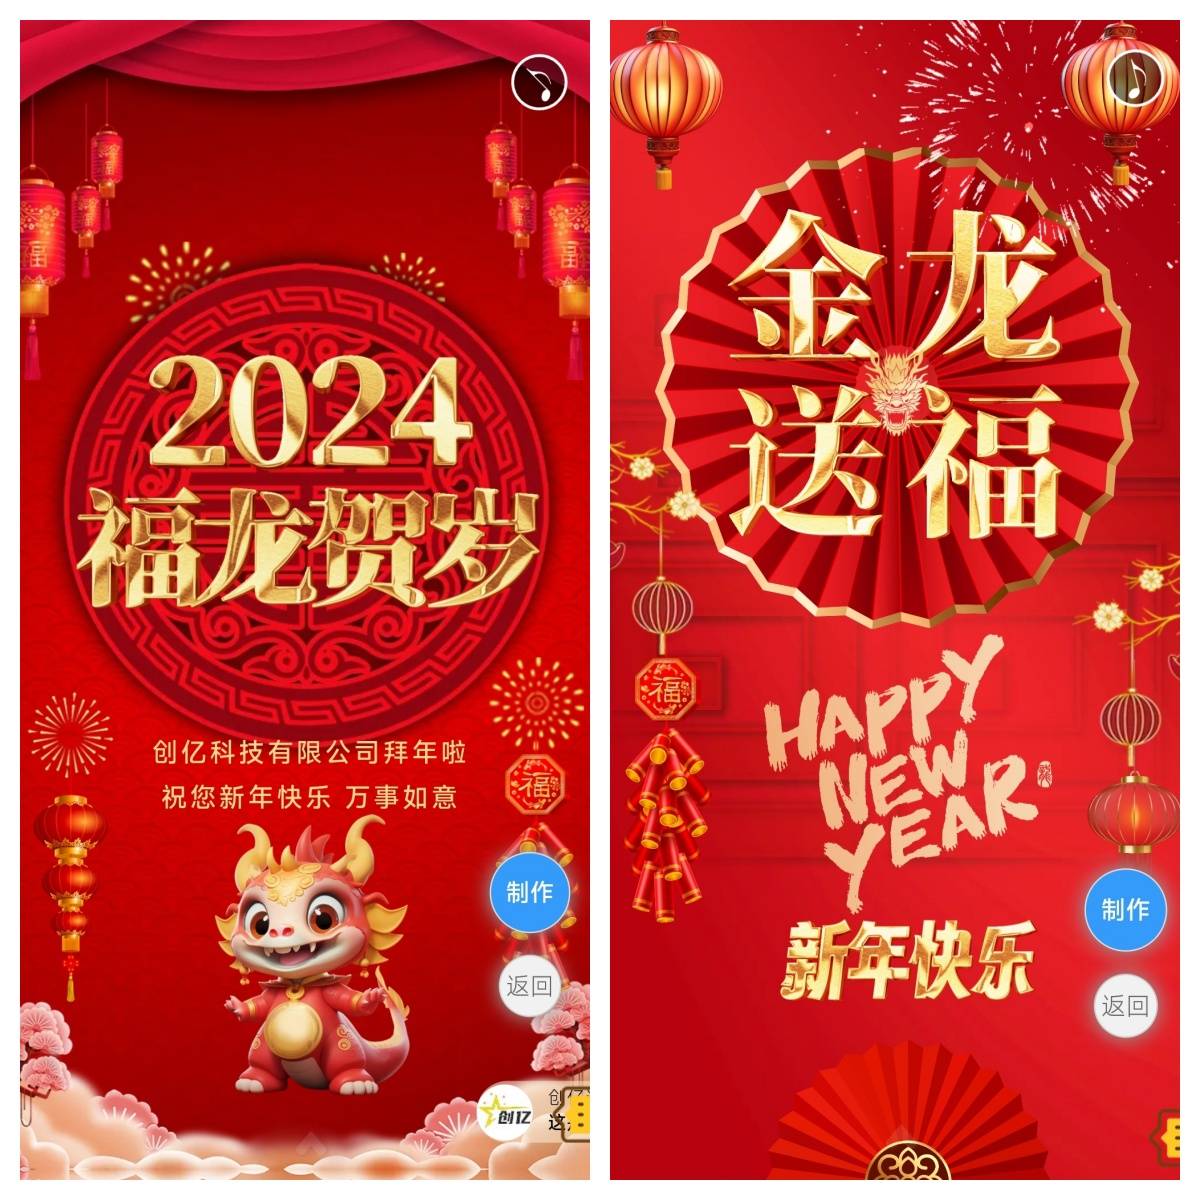 2024龙年大吉新年快乐祝福电子贺卡制作